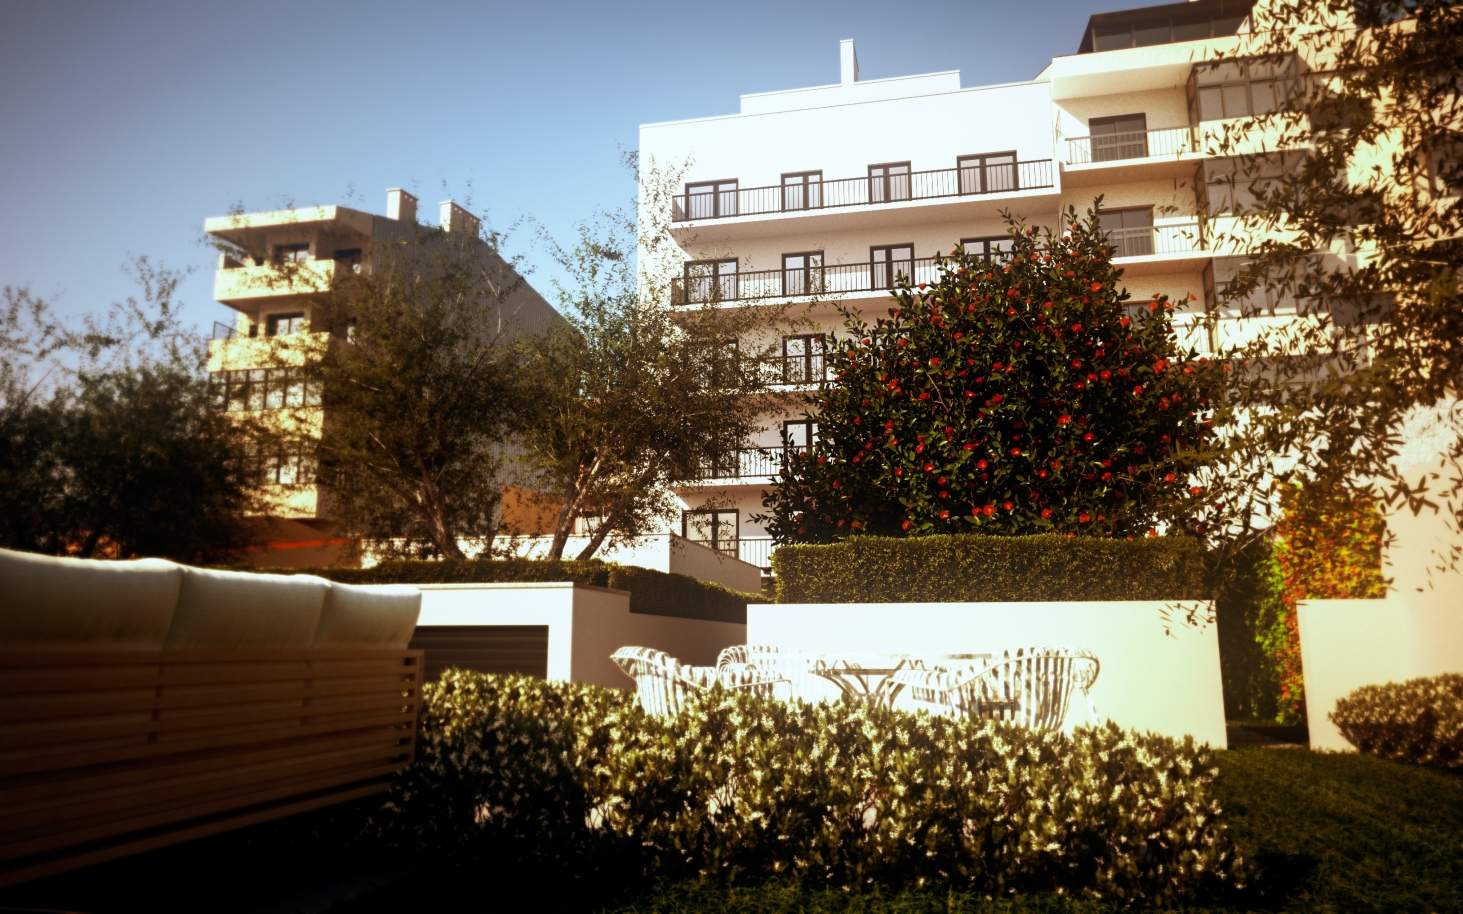 Sale apartment with garden in new development, Porto, Portugal_106277